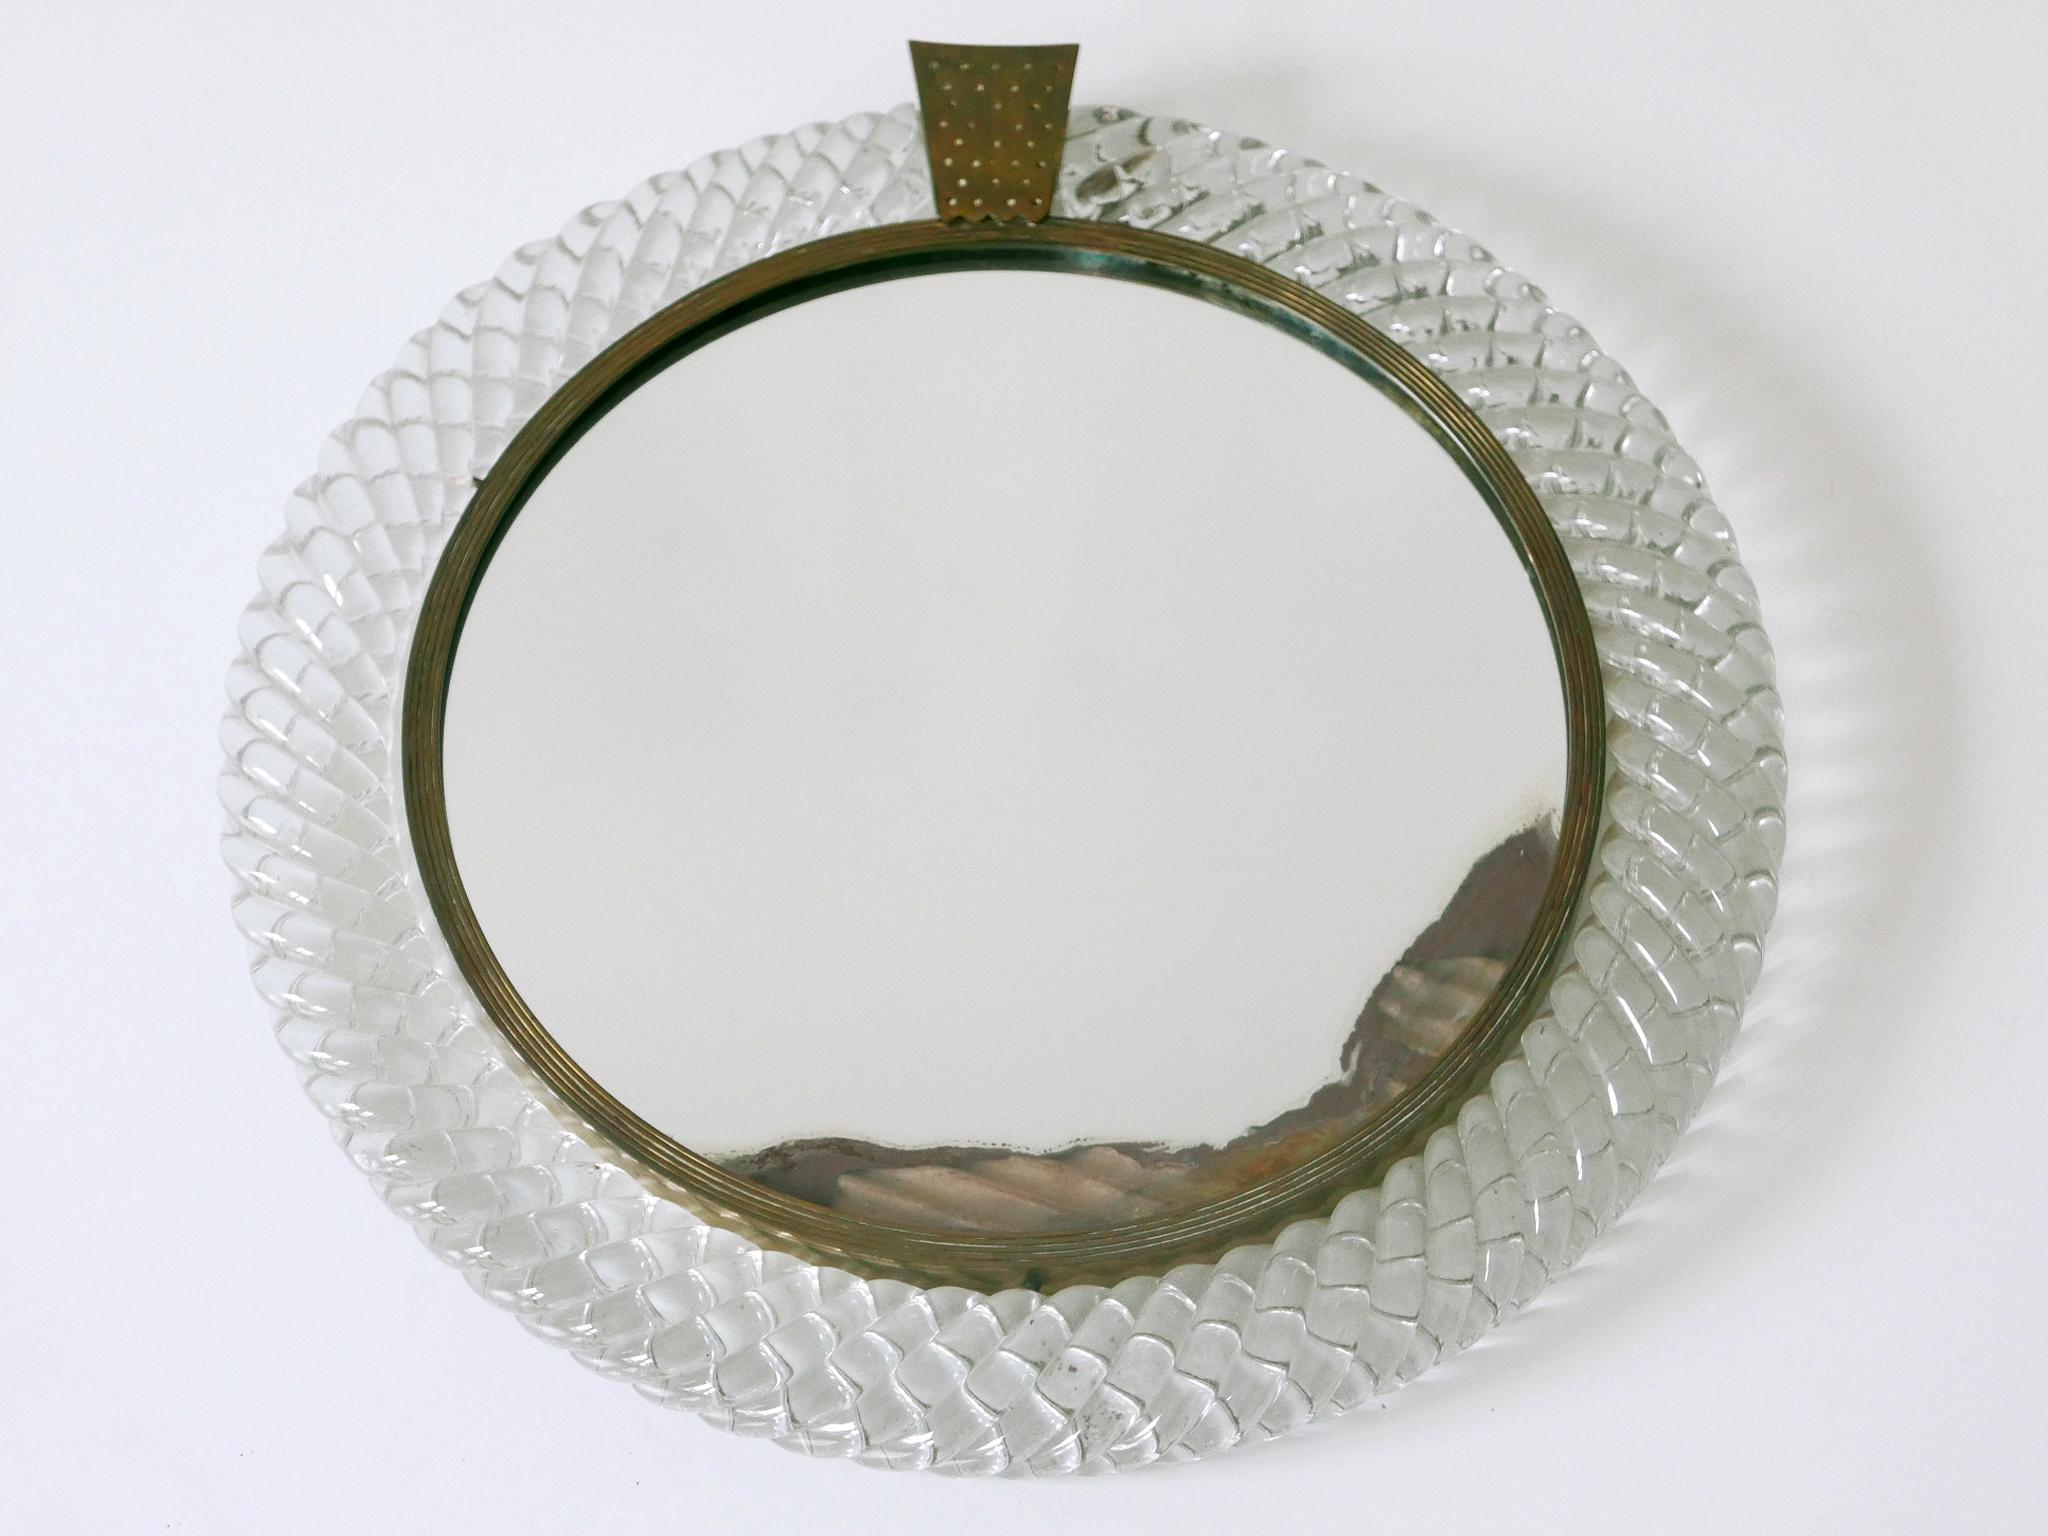 Italian Elegant Murano Glass Treccia Wall Mirror by Carlo Scarpa for Venini Italy 1950s For Sale